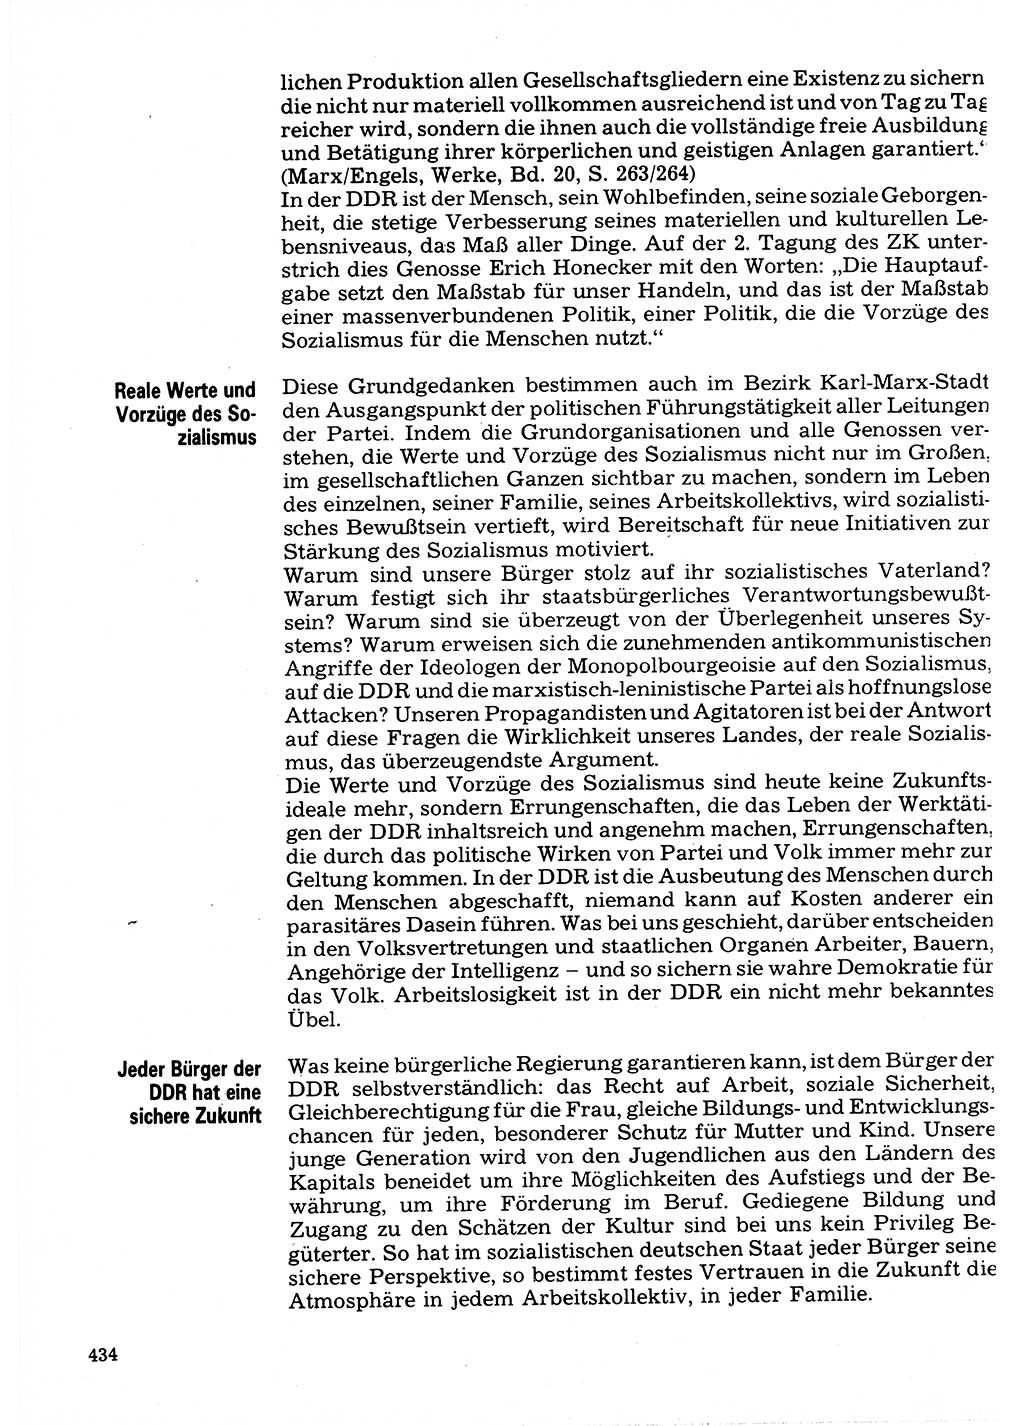 Neuer Weg (NW), Organ des Zentralkomitees (ZK) der SED (Sozialistische Einheitspartei Deutschlands) für Fragen des Parteilebens, 32. Jahrgang [Deutsche Demokratische Republik (DDR)] 1977, Seite 434 (NW ZK SED DDR 1977, S. 434)